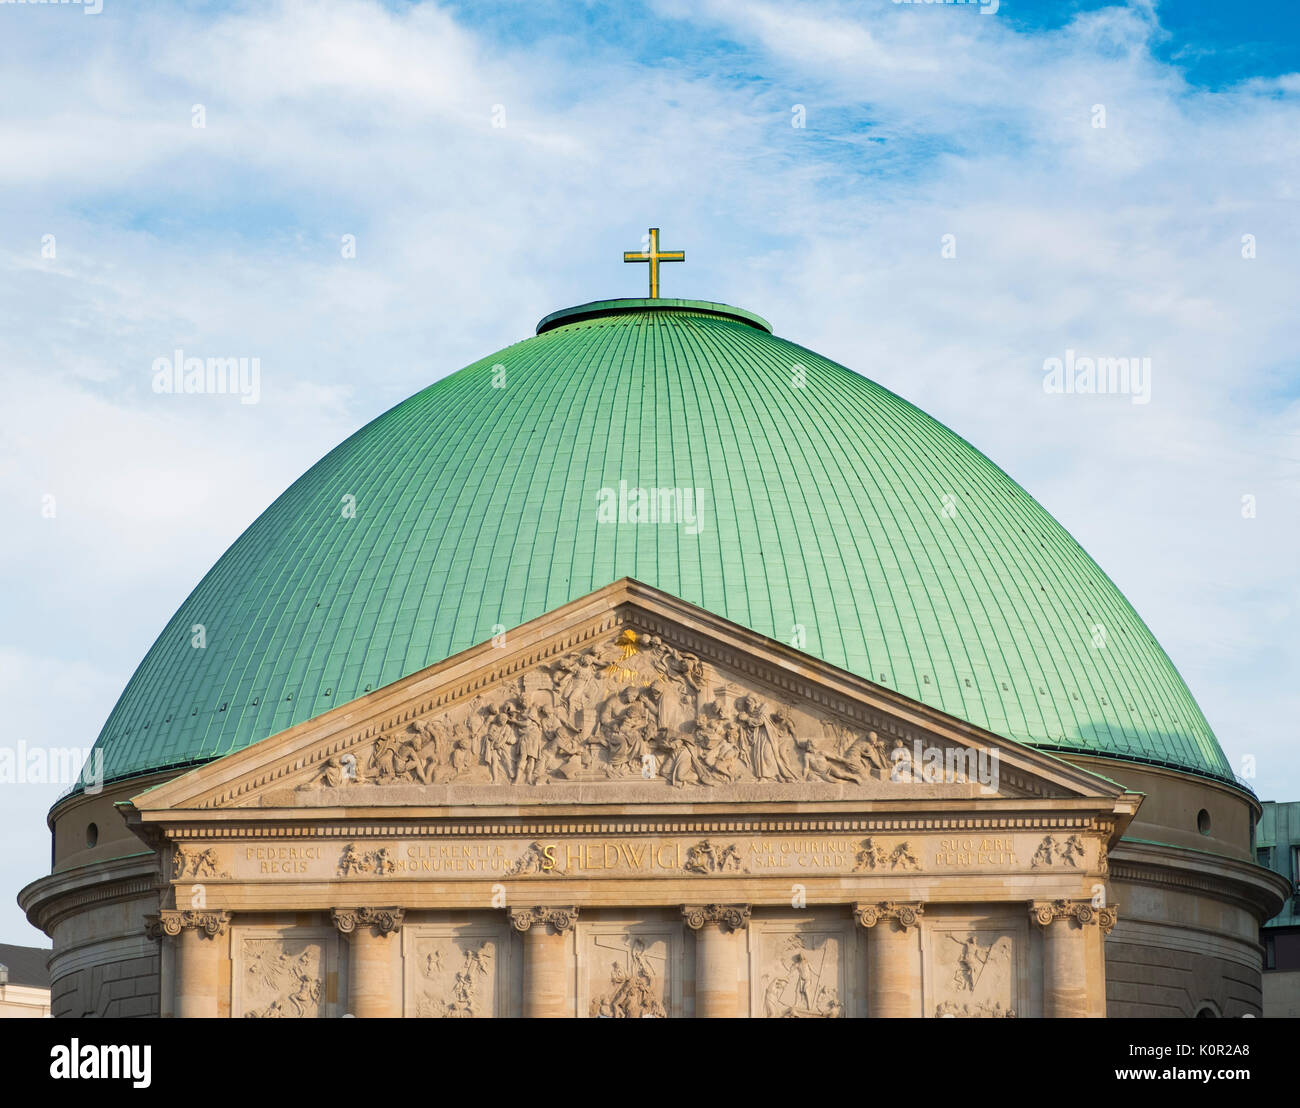 Vista della cupola verde di St Hedwigs cattedrale nel quartiere Mitte, Germania. Foto Stock